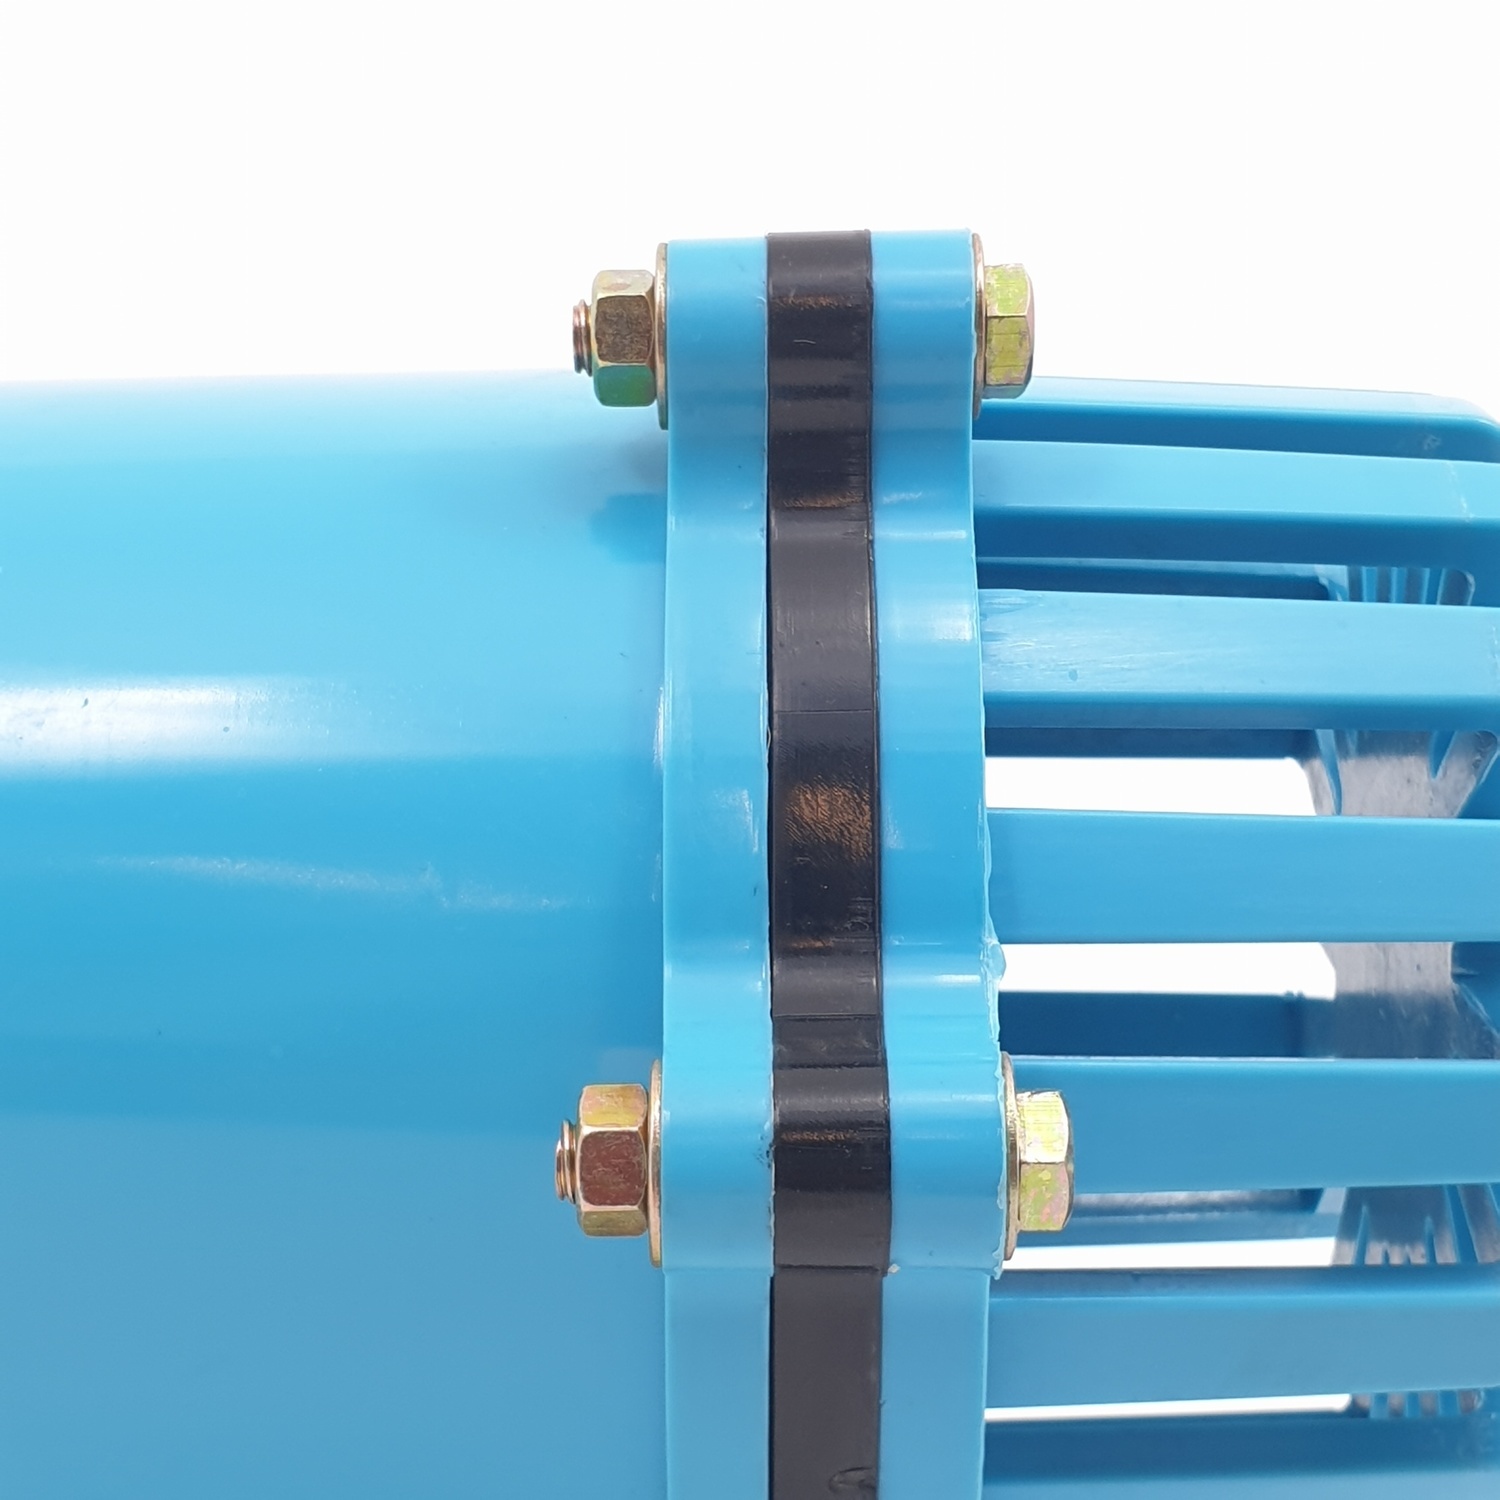 Super Products BFV-N ฟุตวาล์ว PVC สีฟ้า 3 นิ้ว ชนิดลิ้นพลาสติก